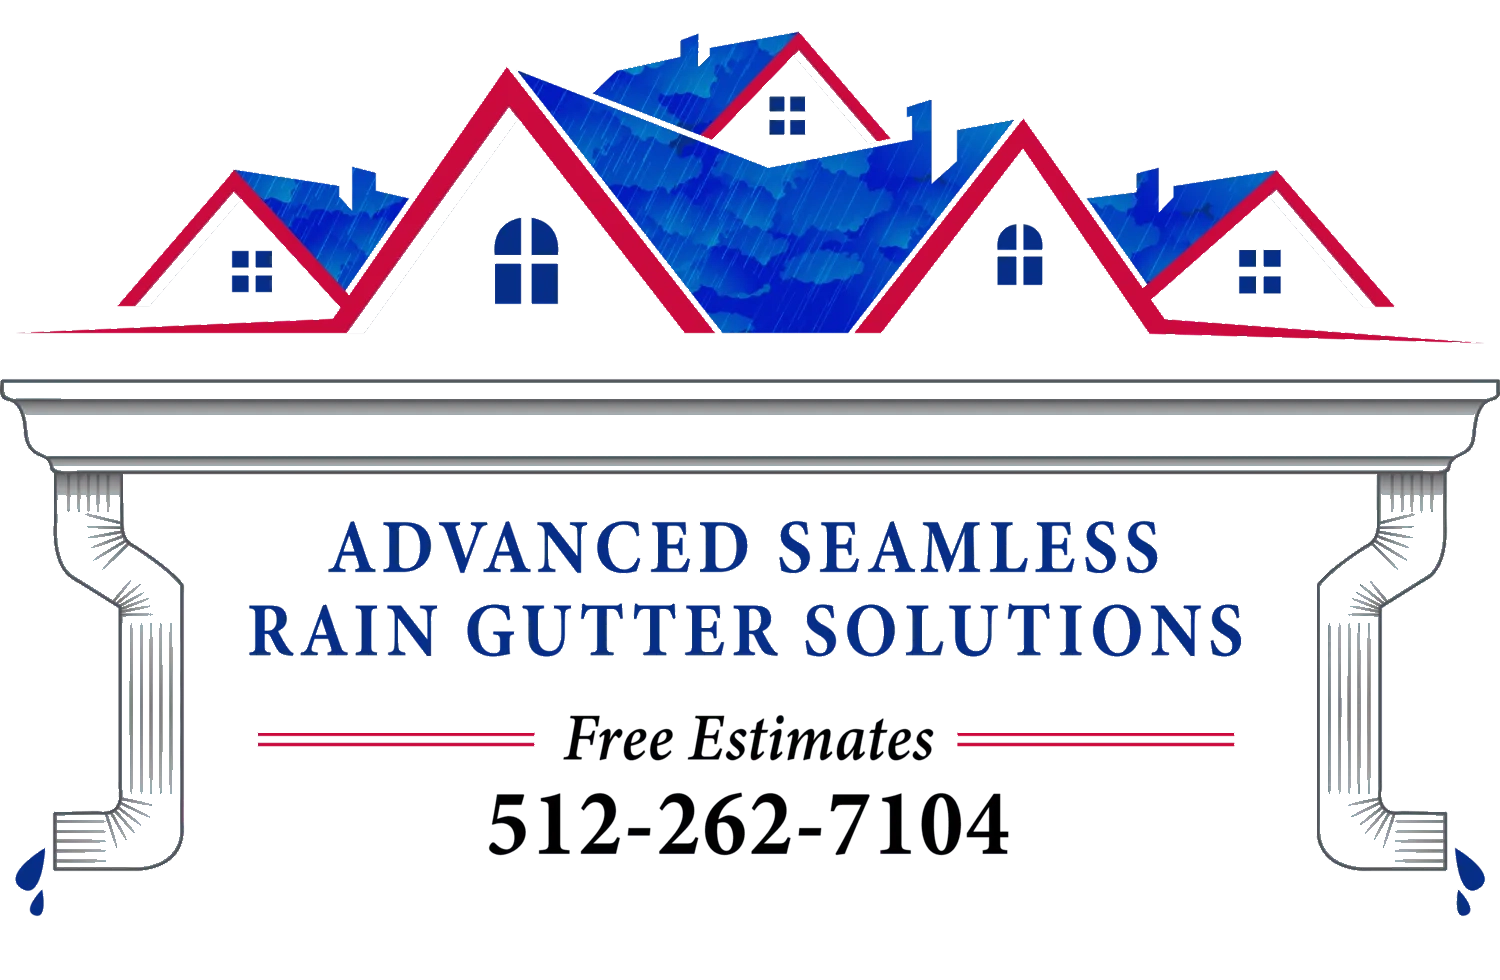 Advanced Seamless Rain Gutter Solutions Logo